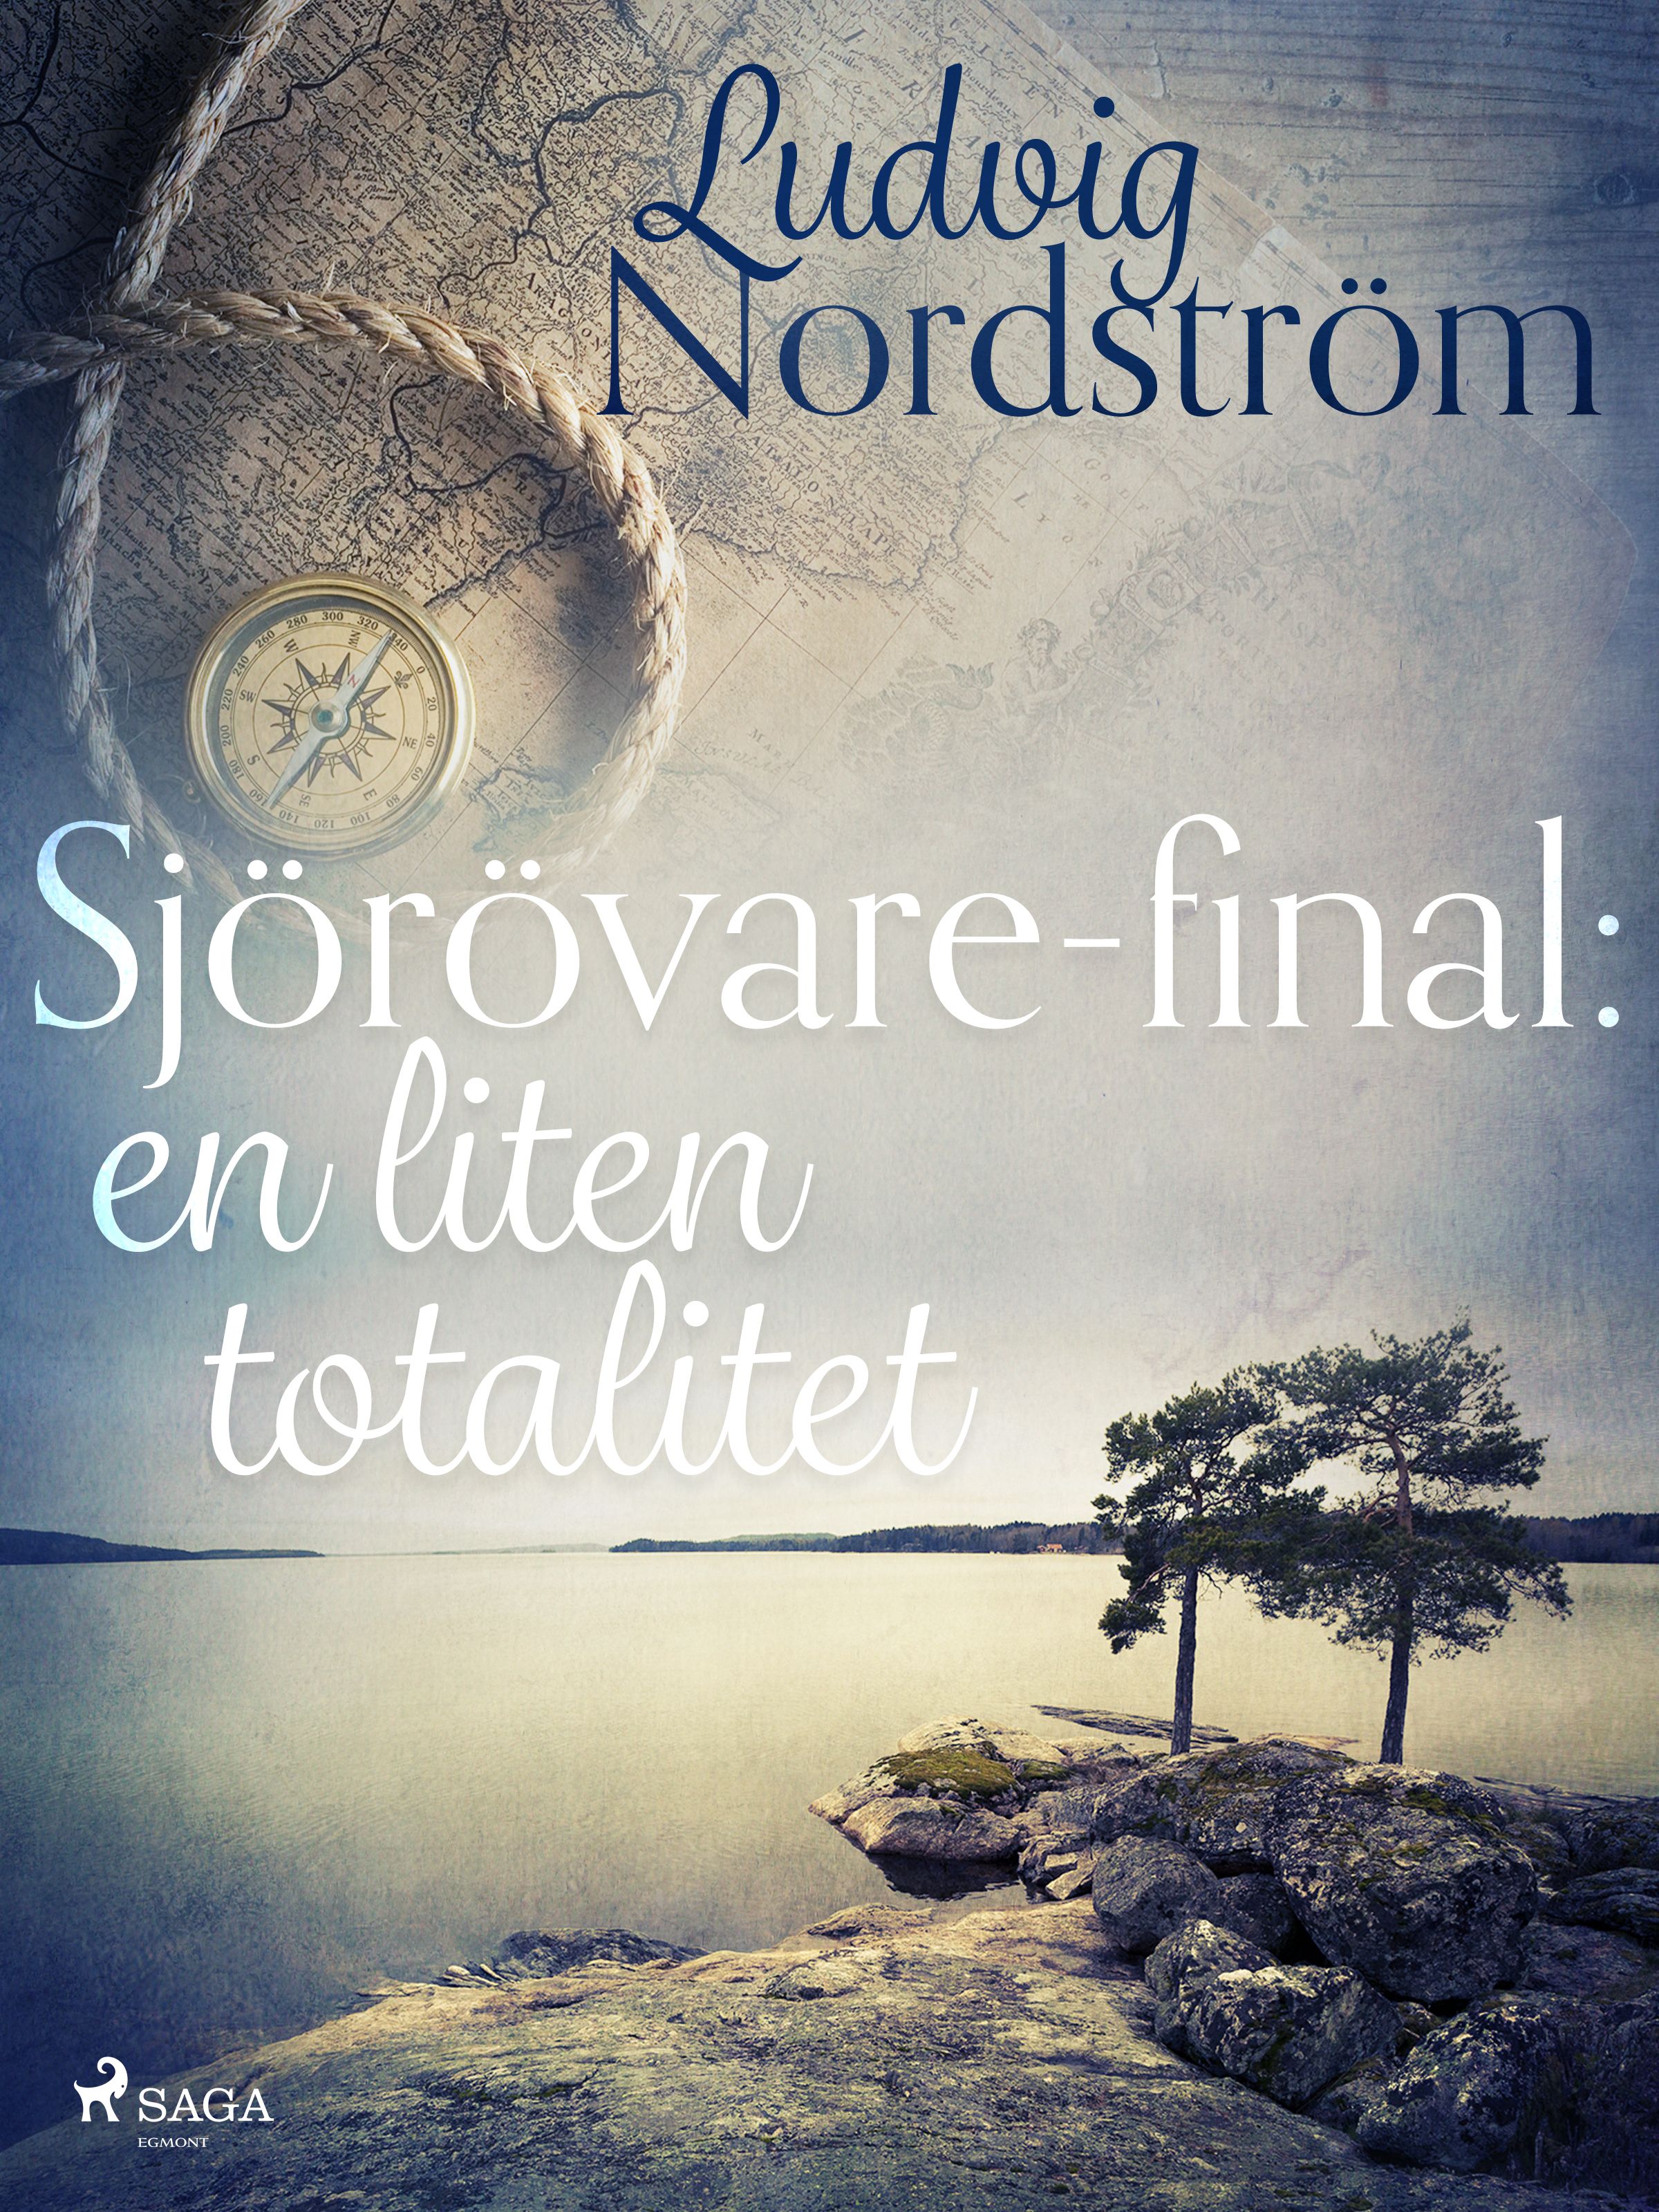 Sjörövare-final: en liten totalitet, eBook by Ludvig Nordström